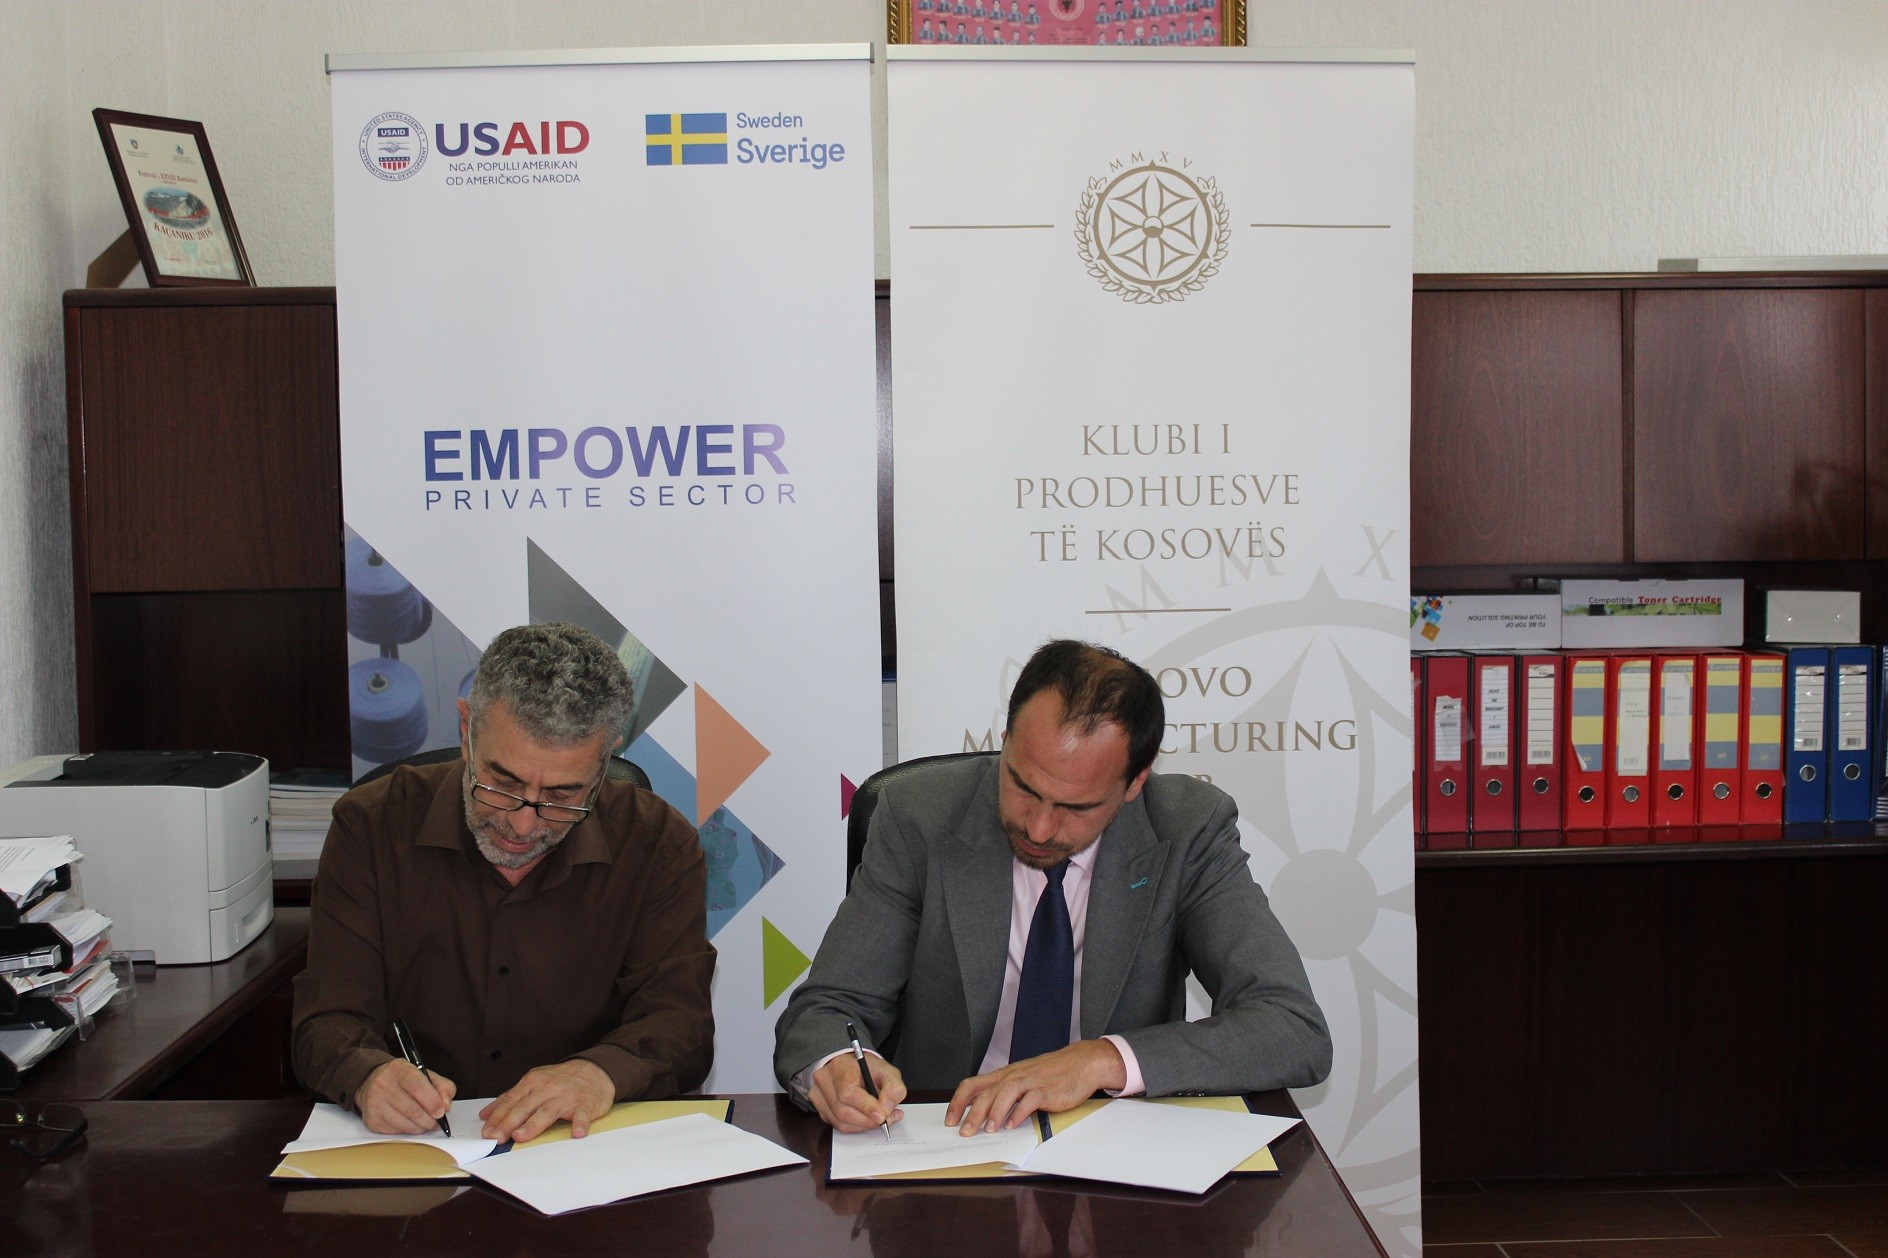 KPK nënshkroi marrëveshje për punësimin e të rinjve në Kaçanik